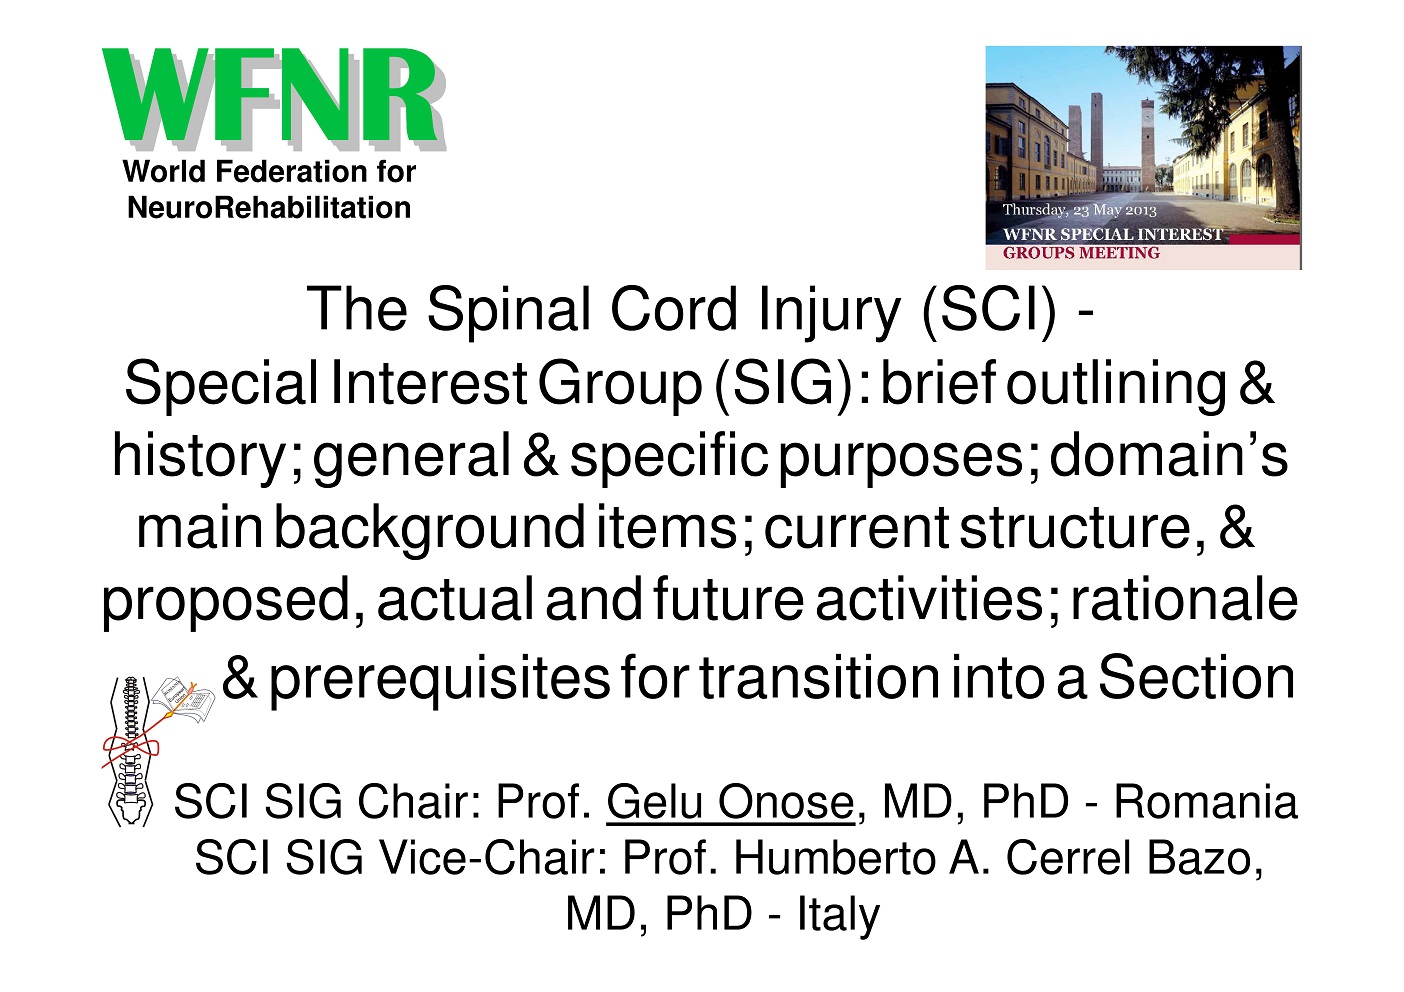 The Spinal Cord Injury SIG - presentation at the Pavia Meeting - May 2013 -